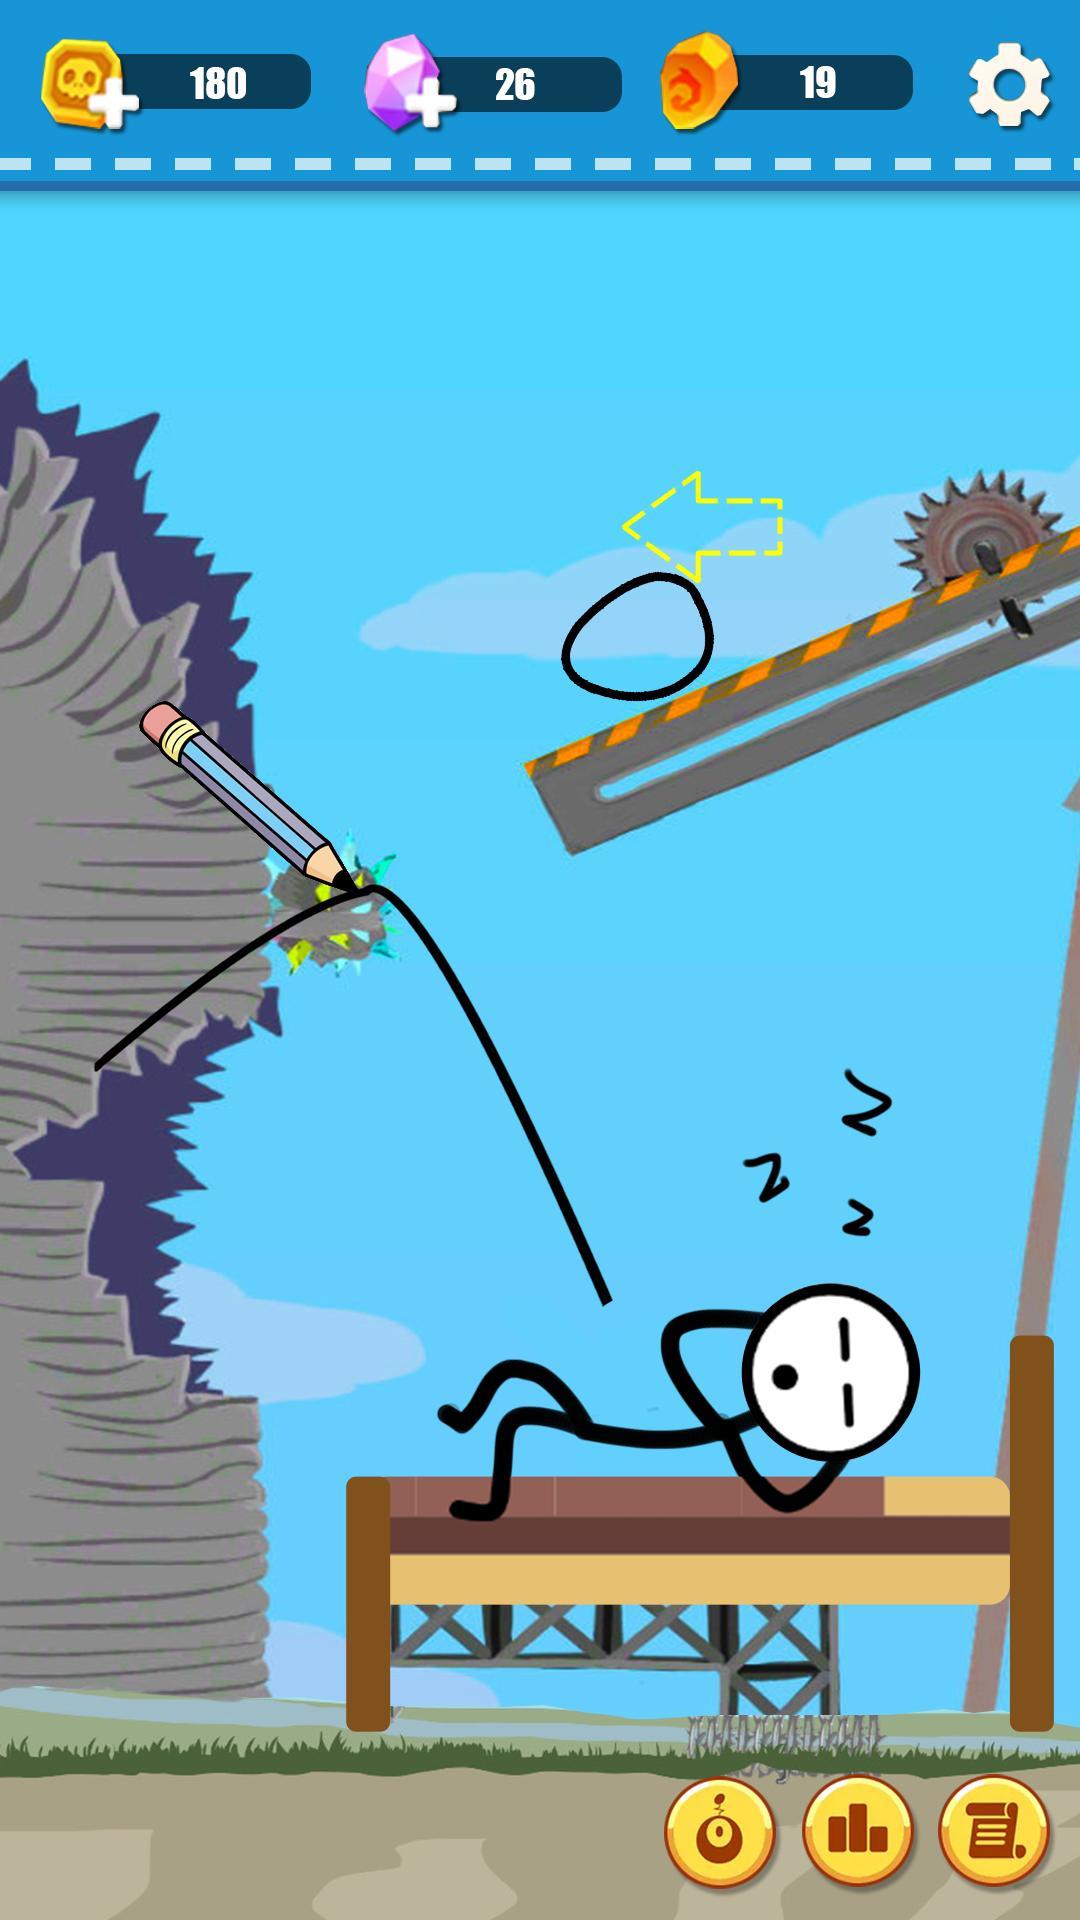 Screenshot 1 of Tricky Ball: Vẽ đường trò chơi khó 1.1.1